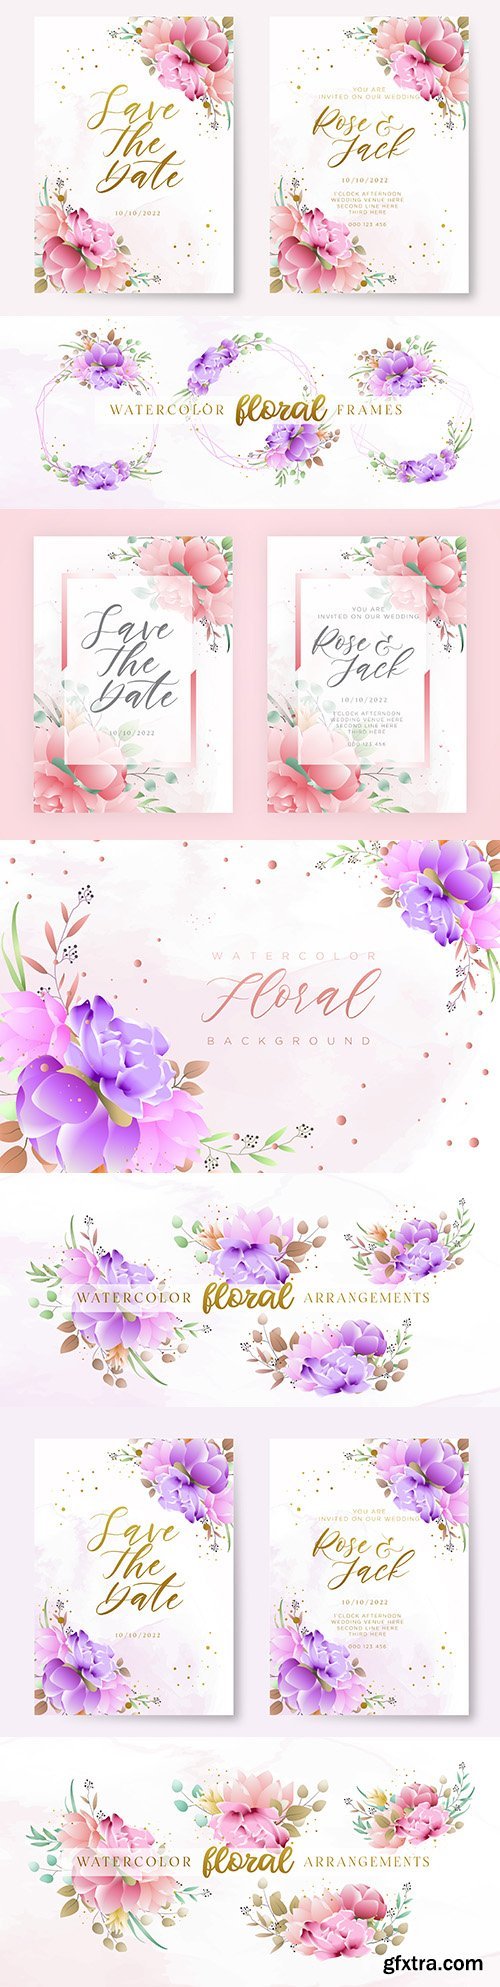 Wedding invitations gentle watercolor floral design